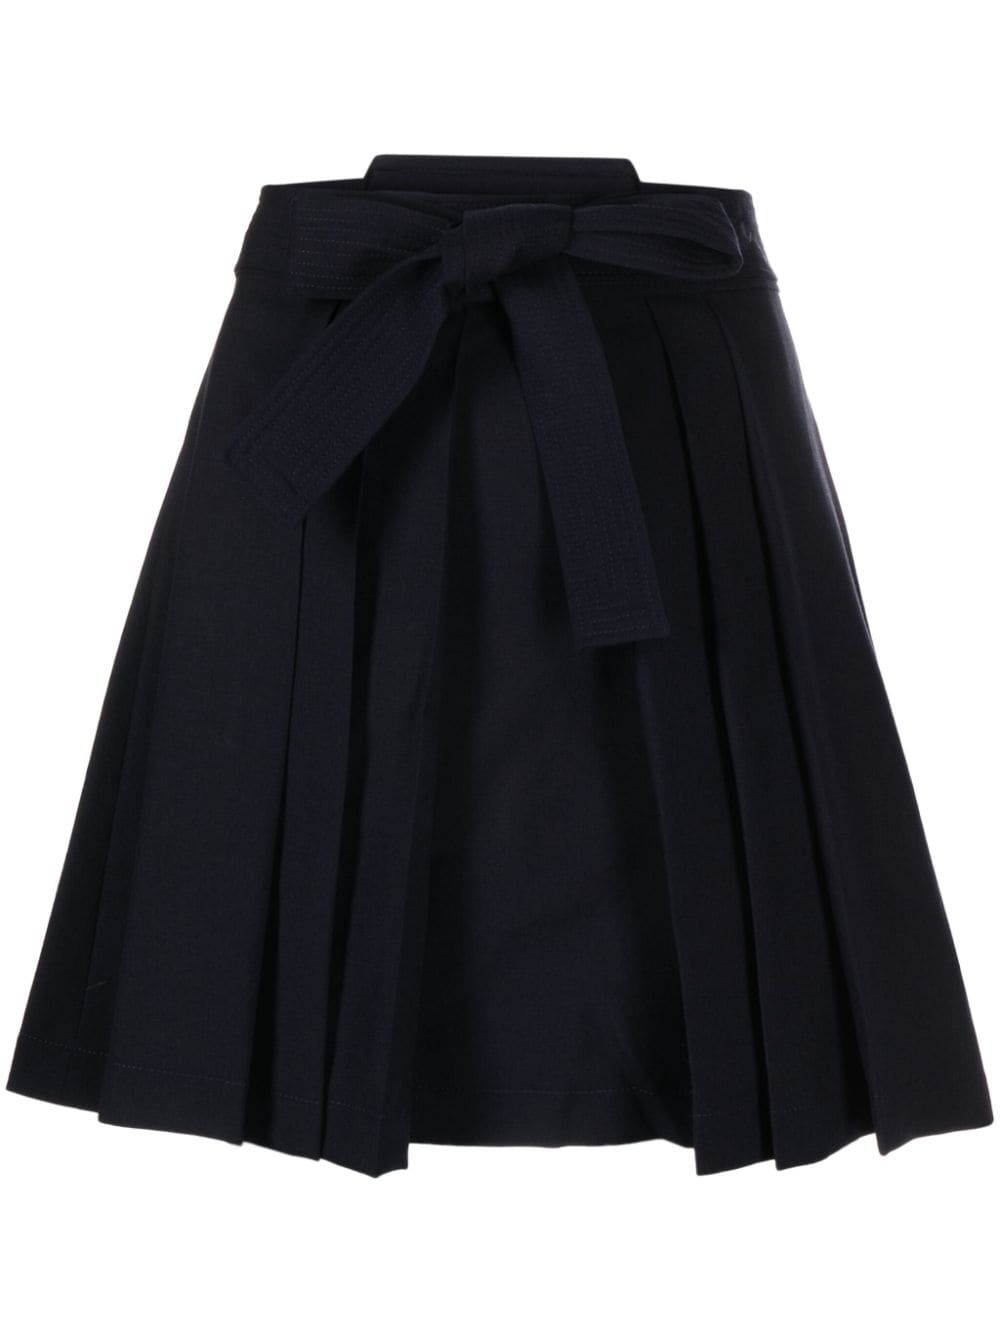 A-line virgin wool skirt - 1